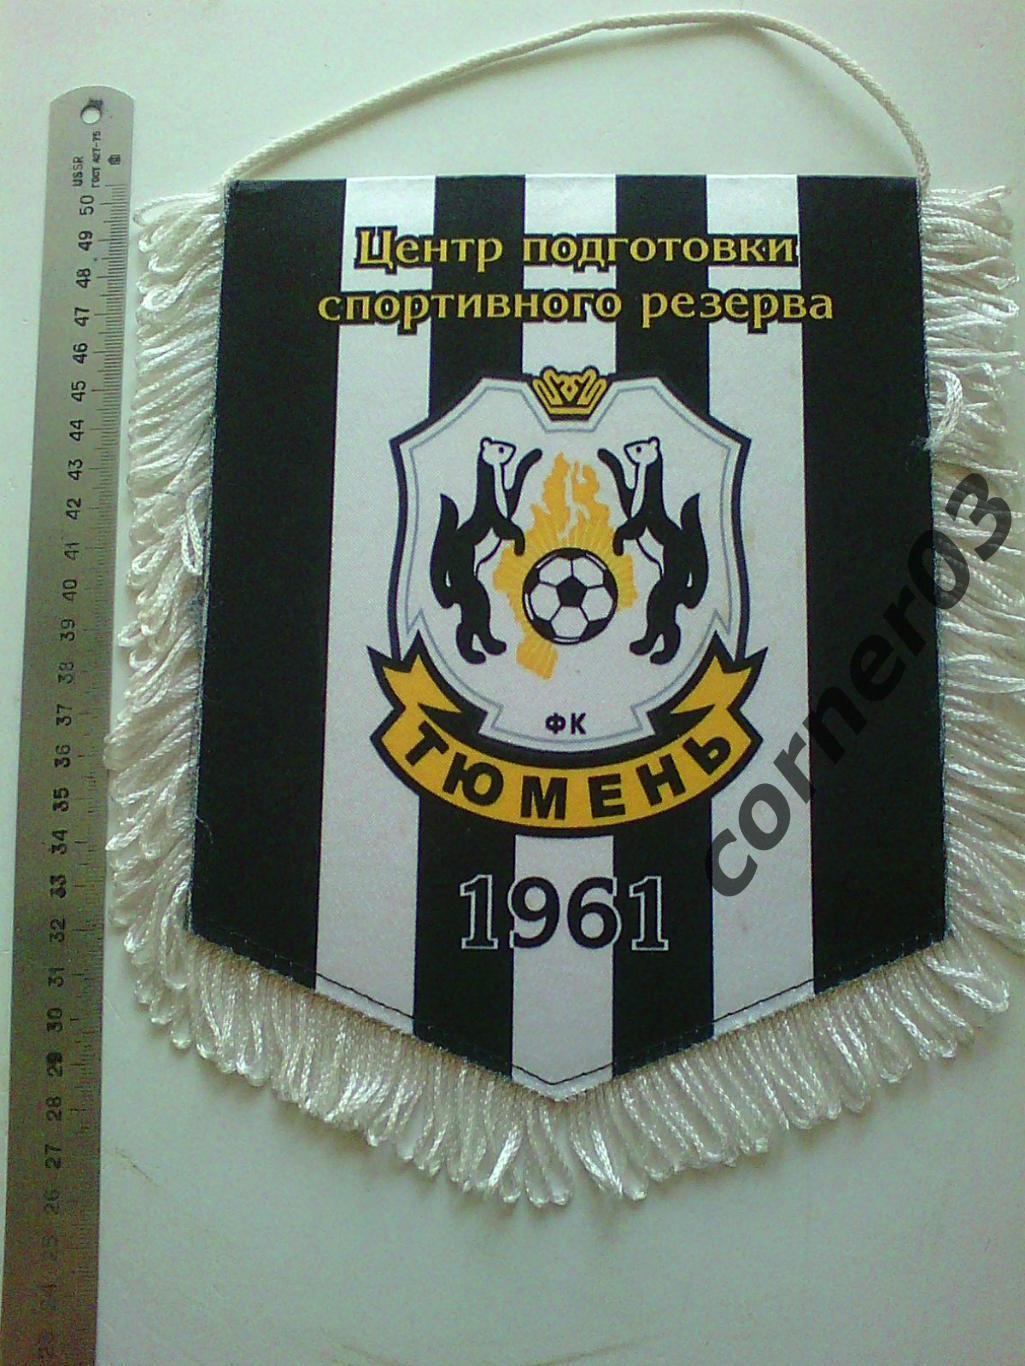 ЦПСР МФК Тюмень 1999, ФК Тюмень 1961. 1